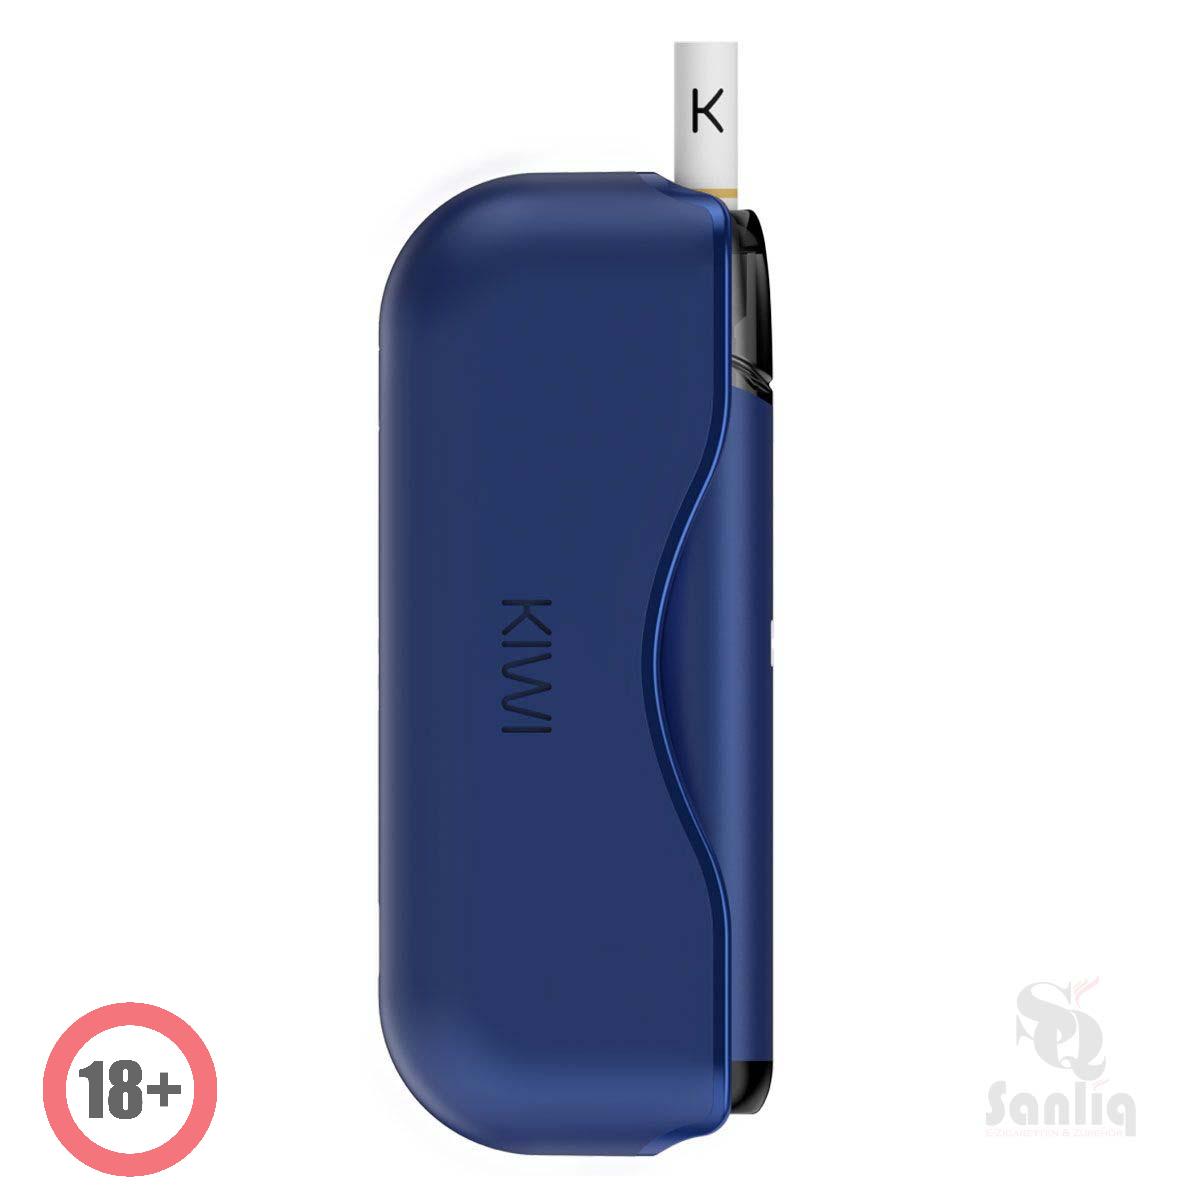 KIWI Starter-Kit Navy Blue ✅ Günstig kaufen! 